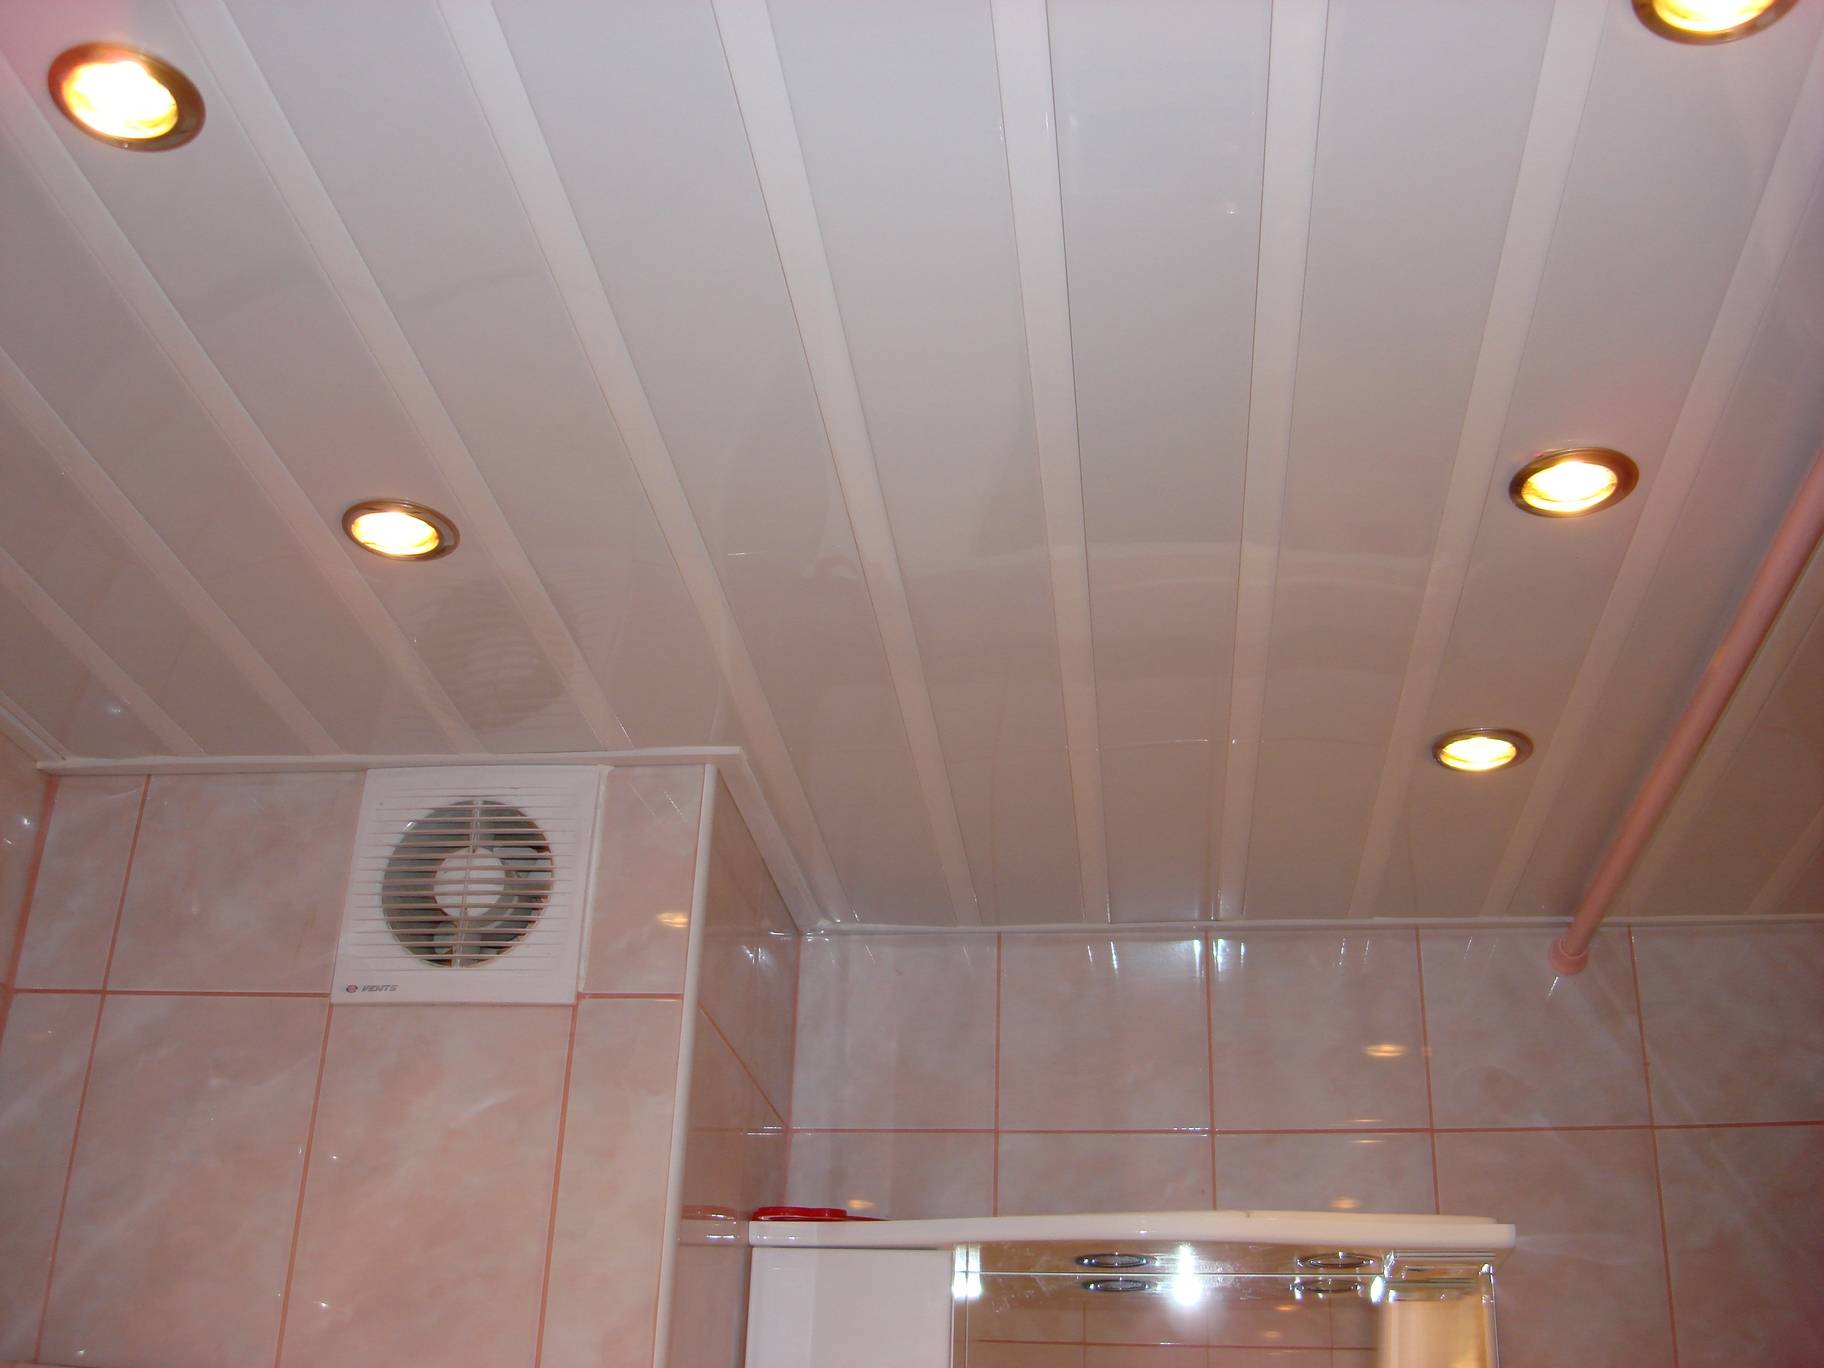 Подвесной потолок в ванной комнате - плюсы, минусы и варианты